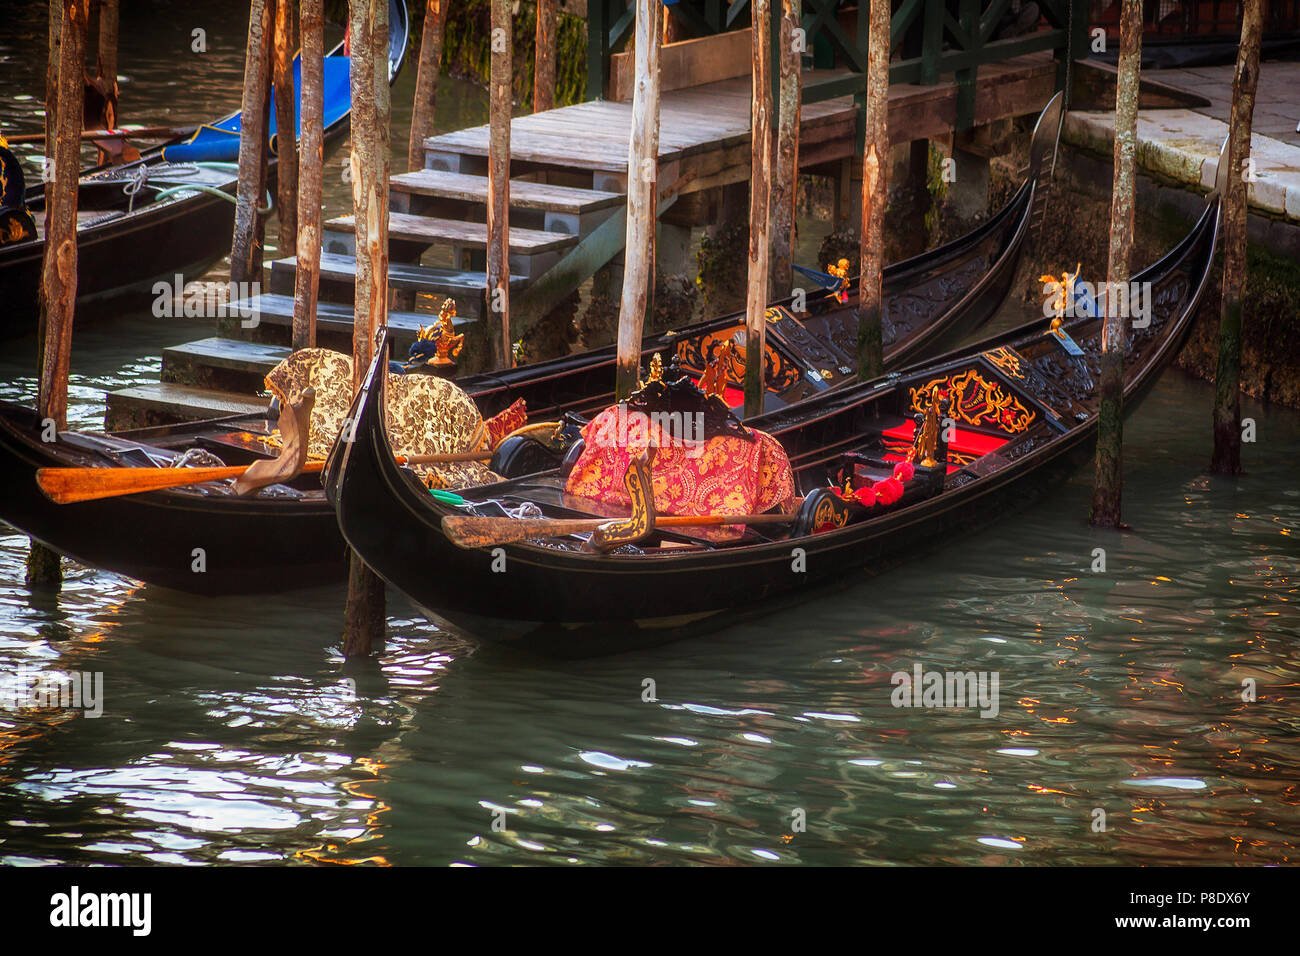 Gondolas at a pier in Venice, Italy Stock Photo